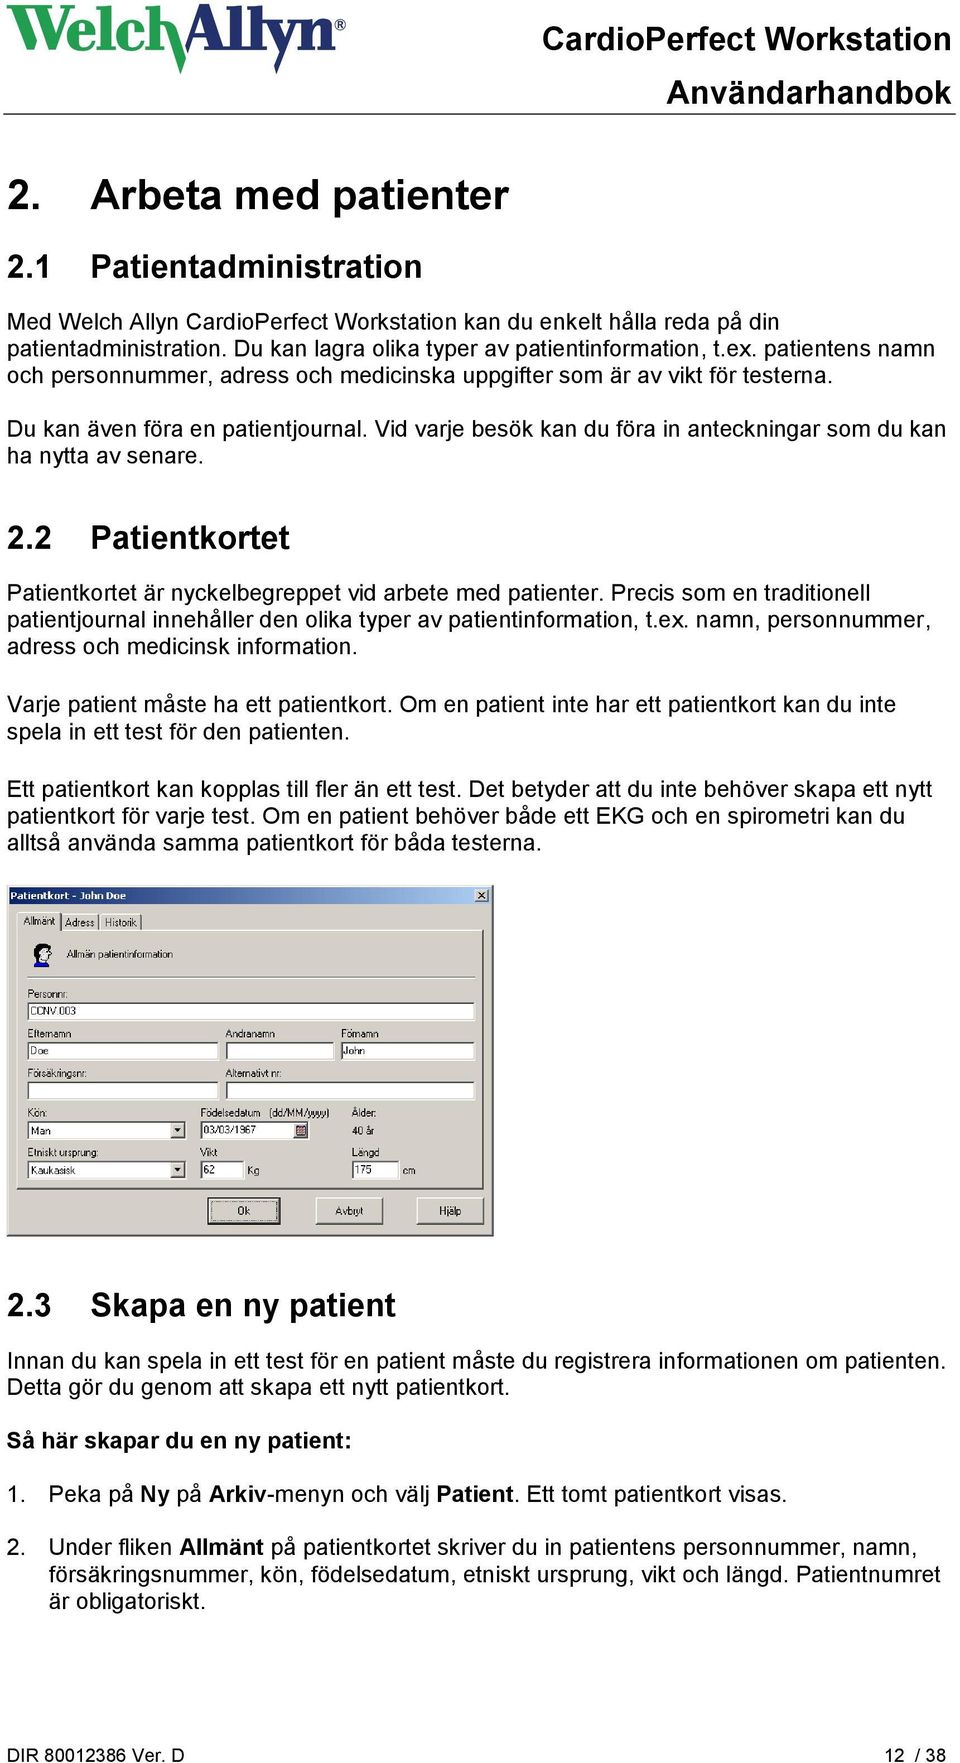 Vid varje besök kan du föra in anteckningar som du kan ha nytta av senare. 2.2 Patientkortet Patientkortet är nyckelbegreppet vid arbete med patienter.